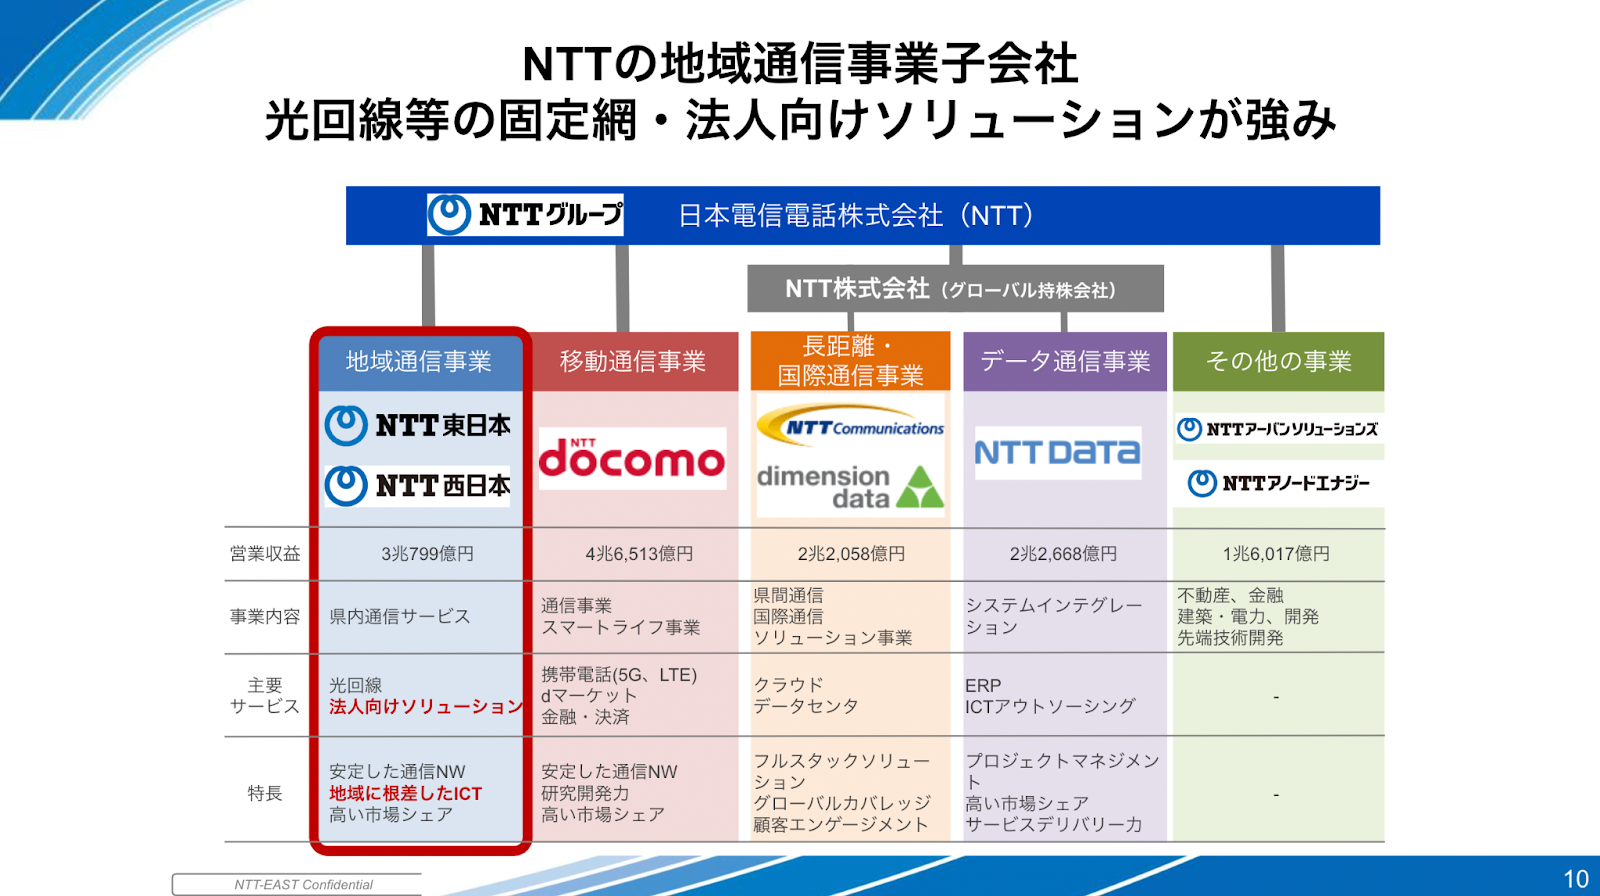 NTTの地域通信事業子会社
光回線等の固定網・法人向けソリューションが強み